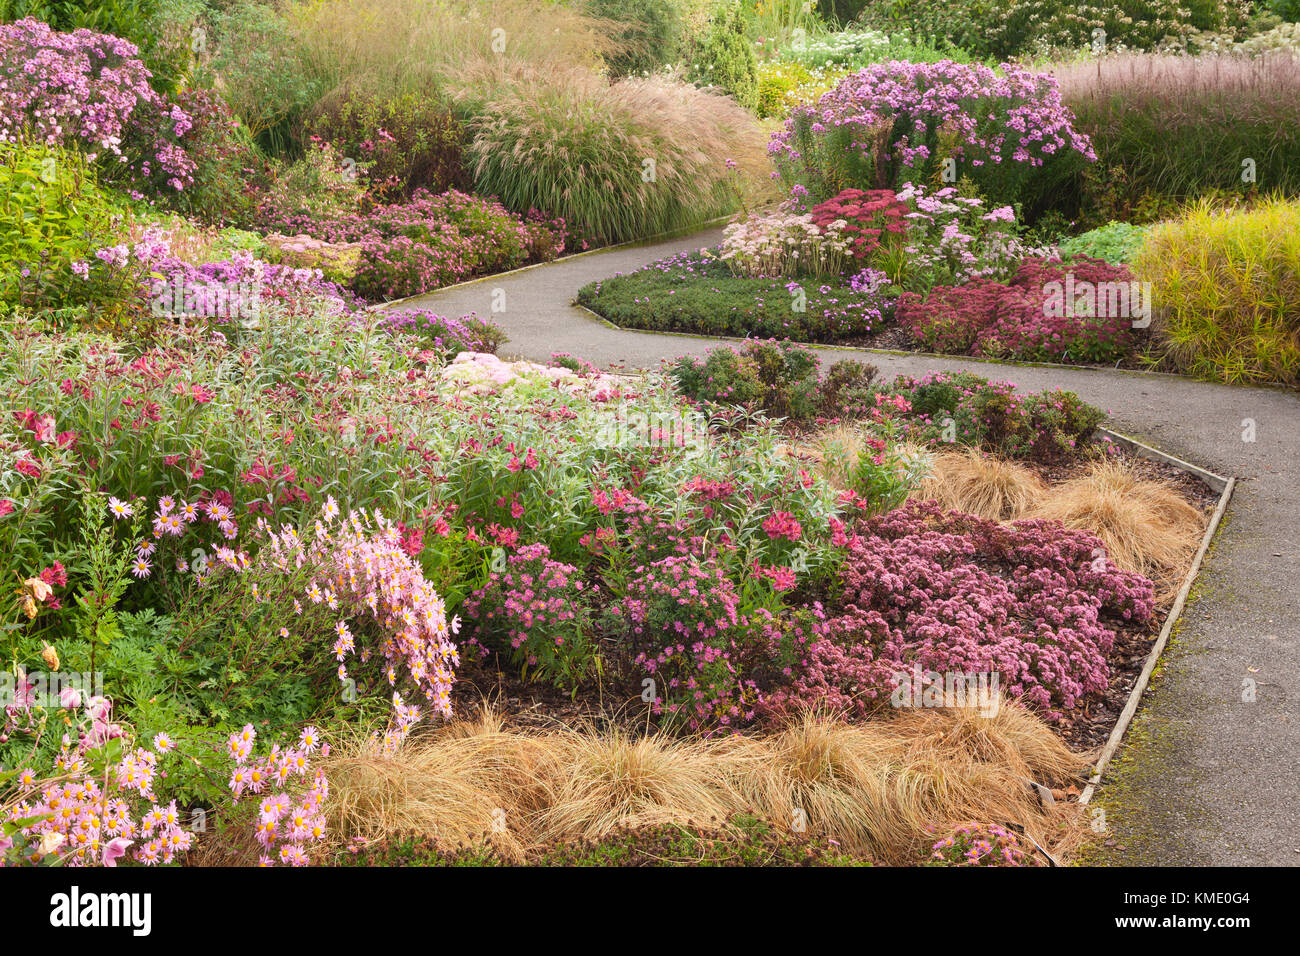 Septembre 2017. Breezy genoux jardins, le grenier aux images, York, YO19 5XS, UK. Banque D'Images